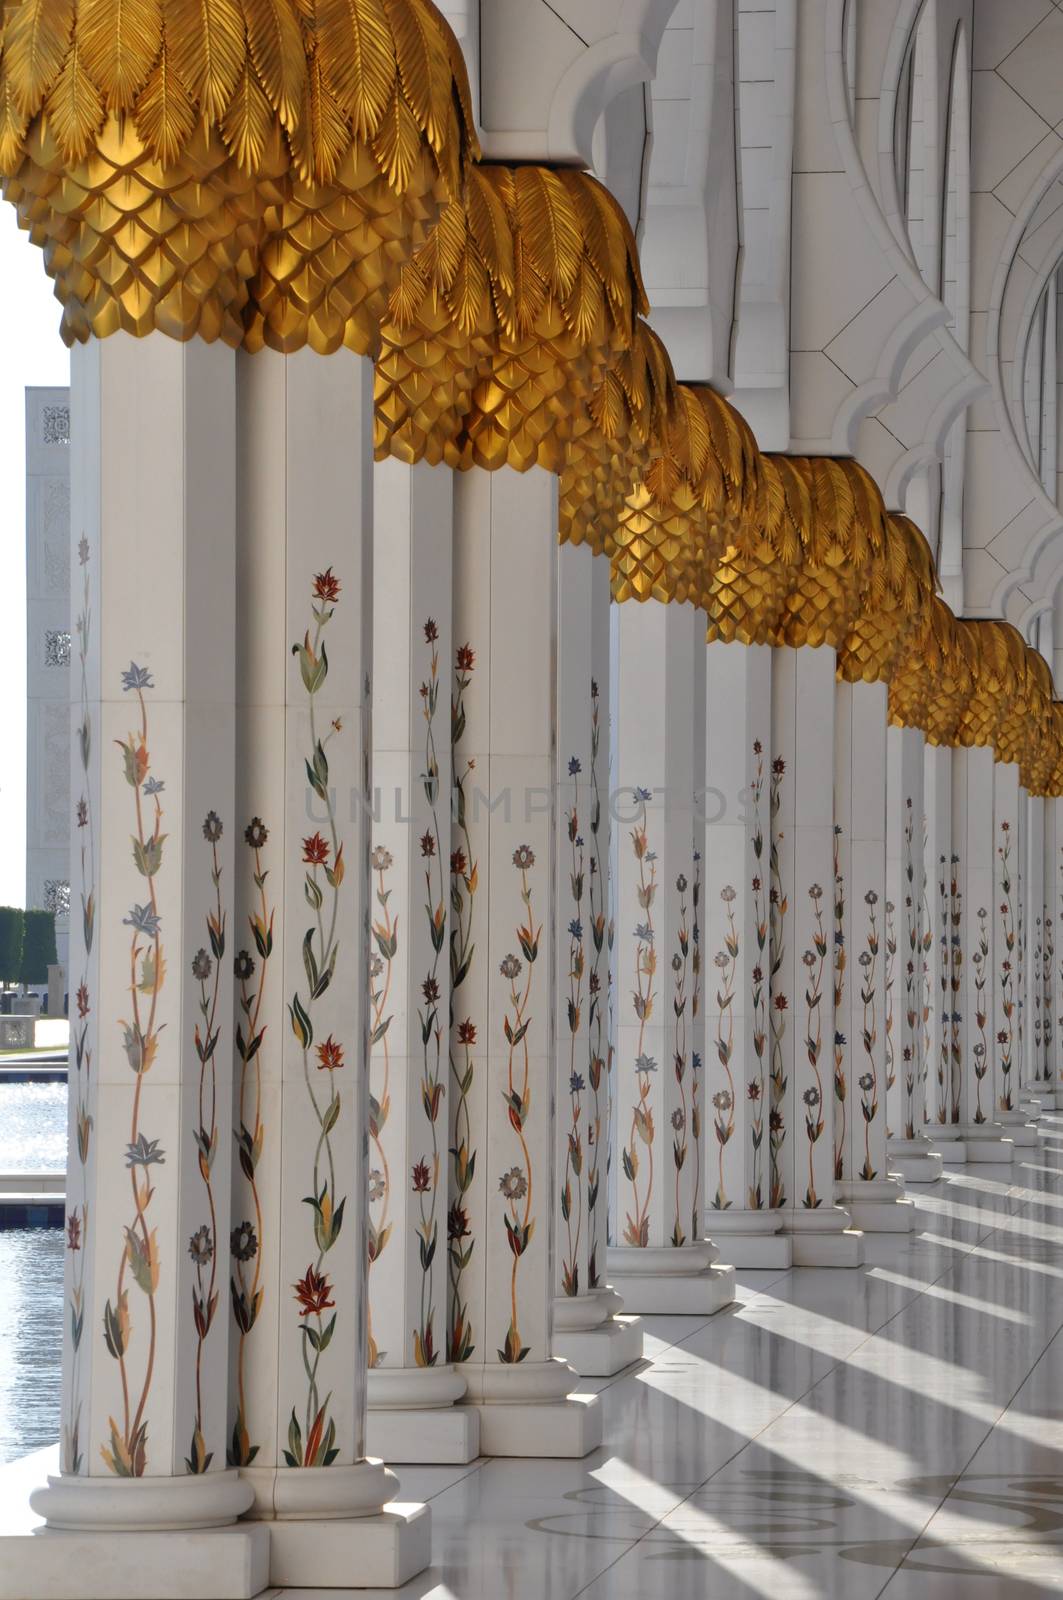 Sheikh Zayed Grand Mosque in Abu Dhabi, UAE by sainaniritu